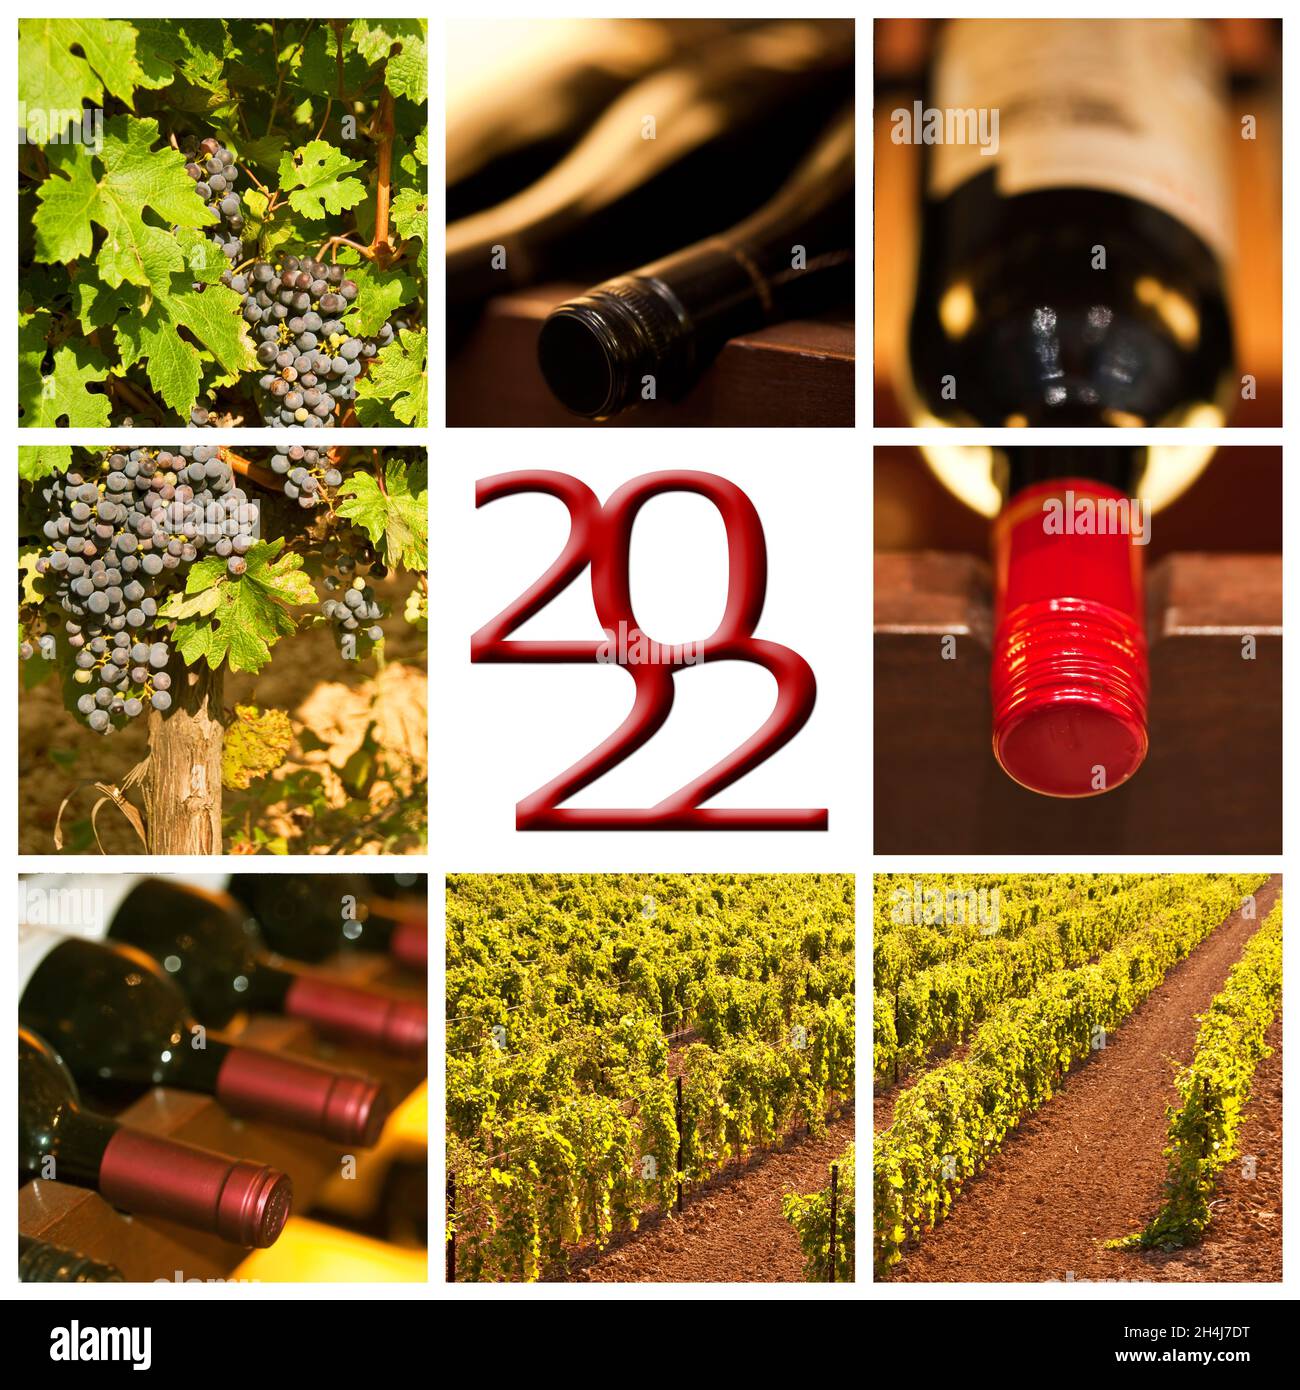 tarjeta de felicitación collage de 2022 fotos cuadradas de vino tinto Foto de stock